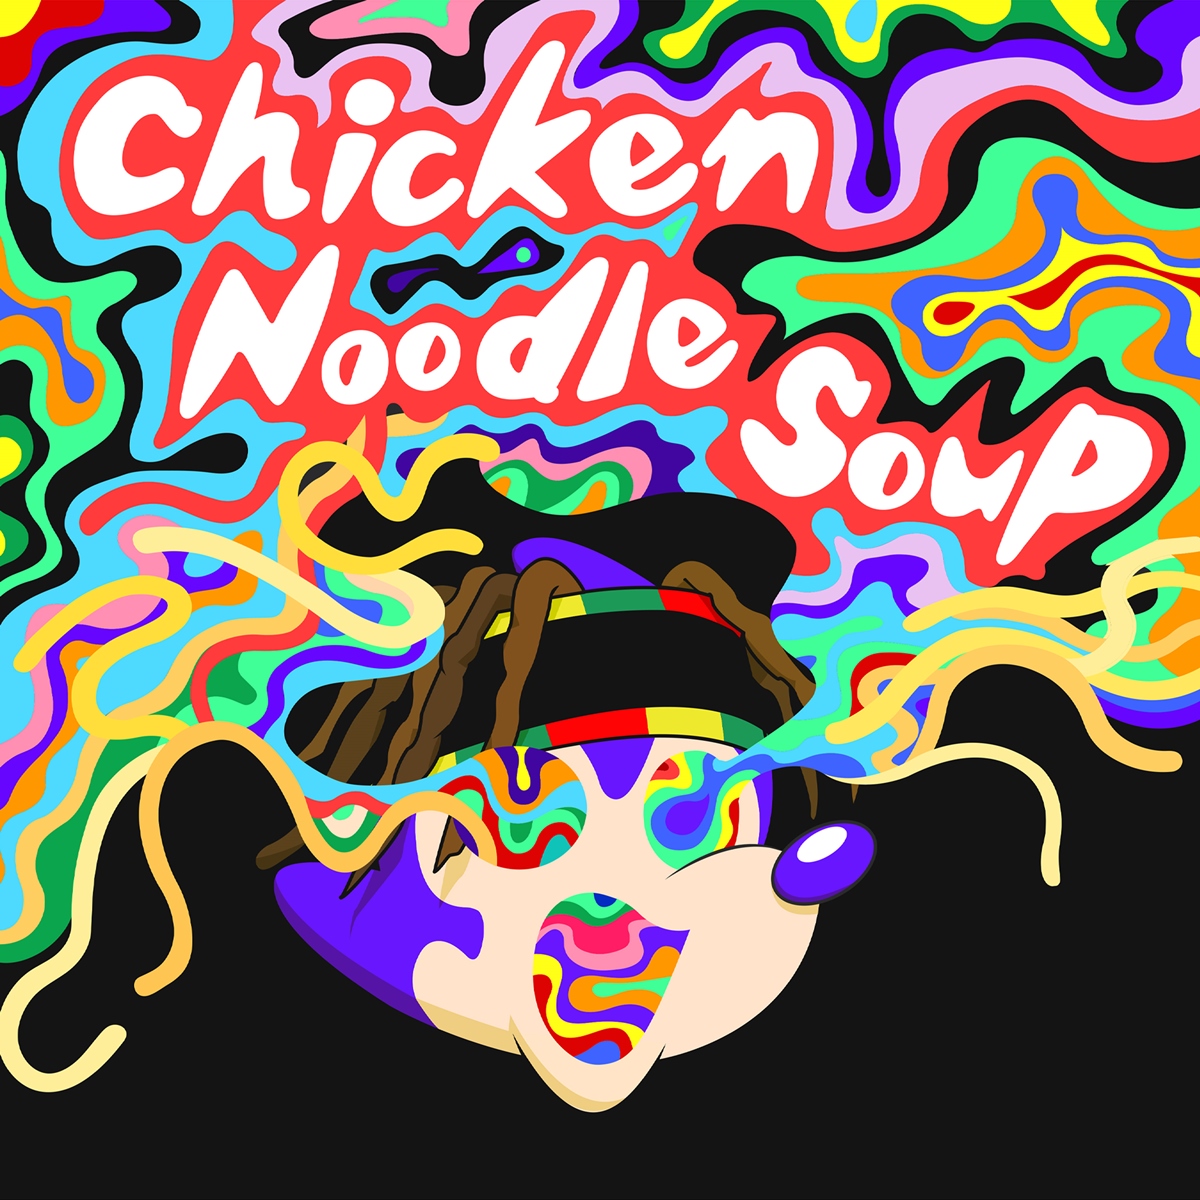 제이홉_Chicken Noodle Soup (feat. Becky G)_커버사진.jpg